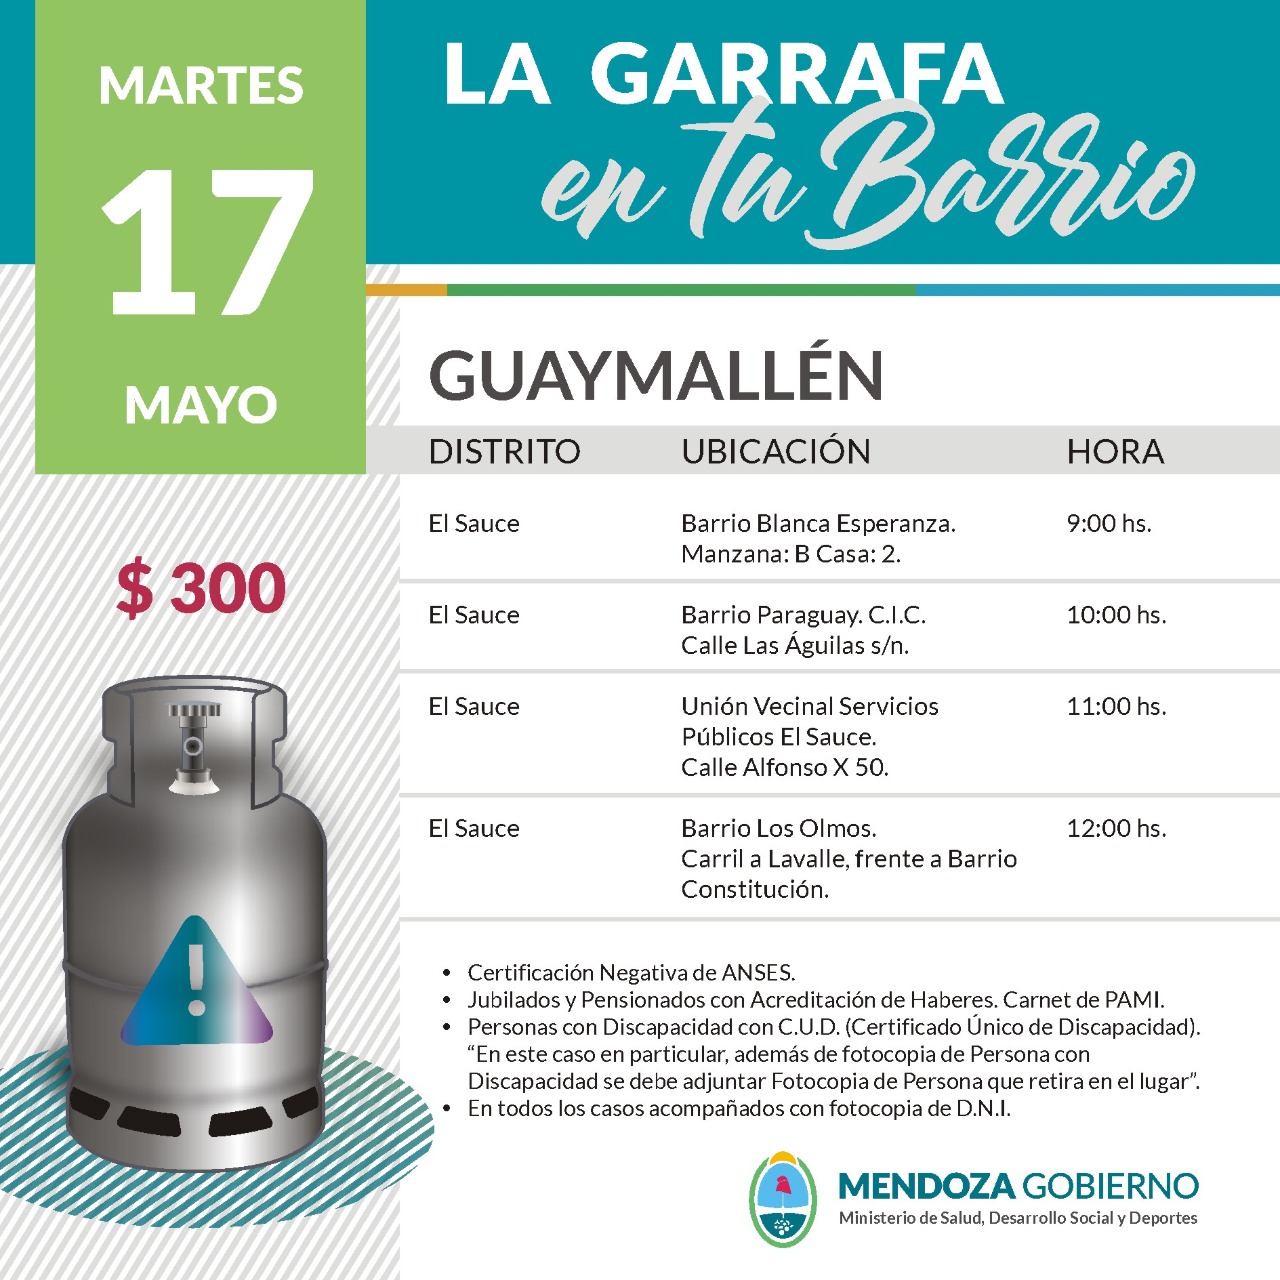 La Garrafa en tu Barrio con subsidio provincial. 17 de mayo.